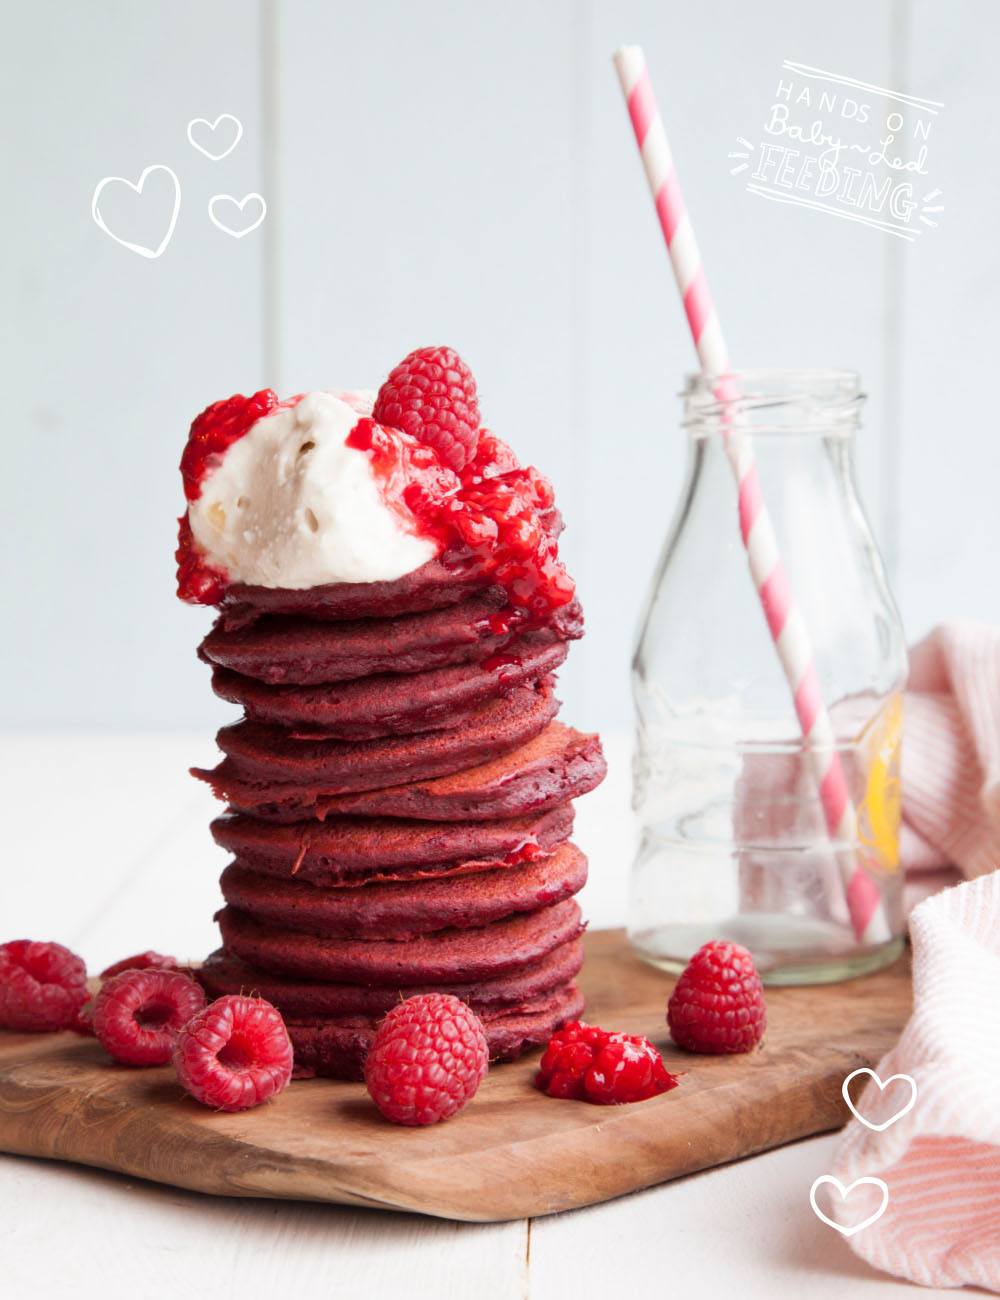 Baby-Led-Feeding-Red-Velvet-Pancakes-Recipe-Image